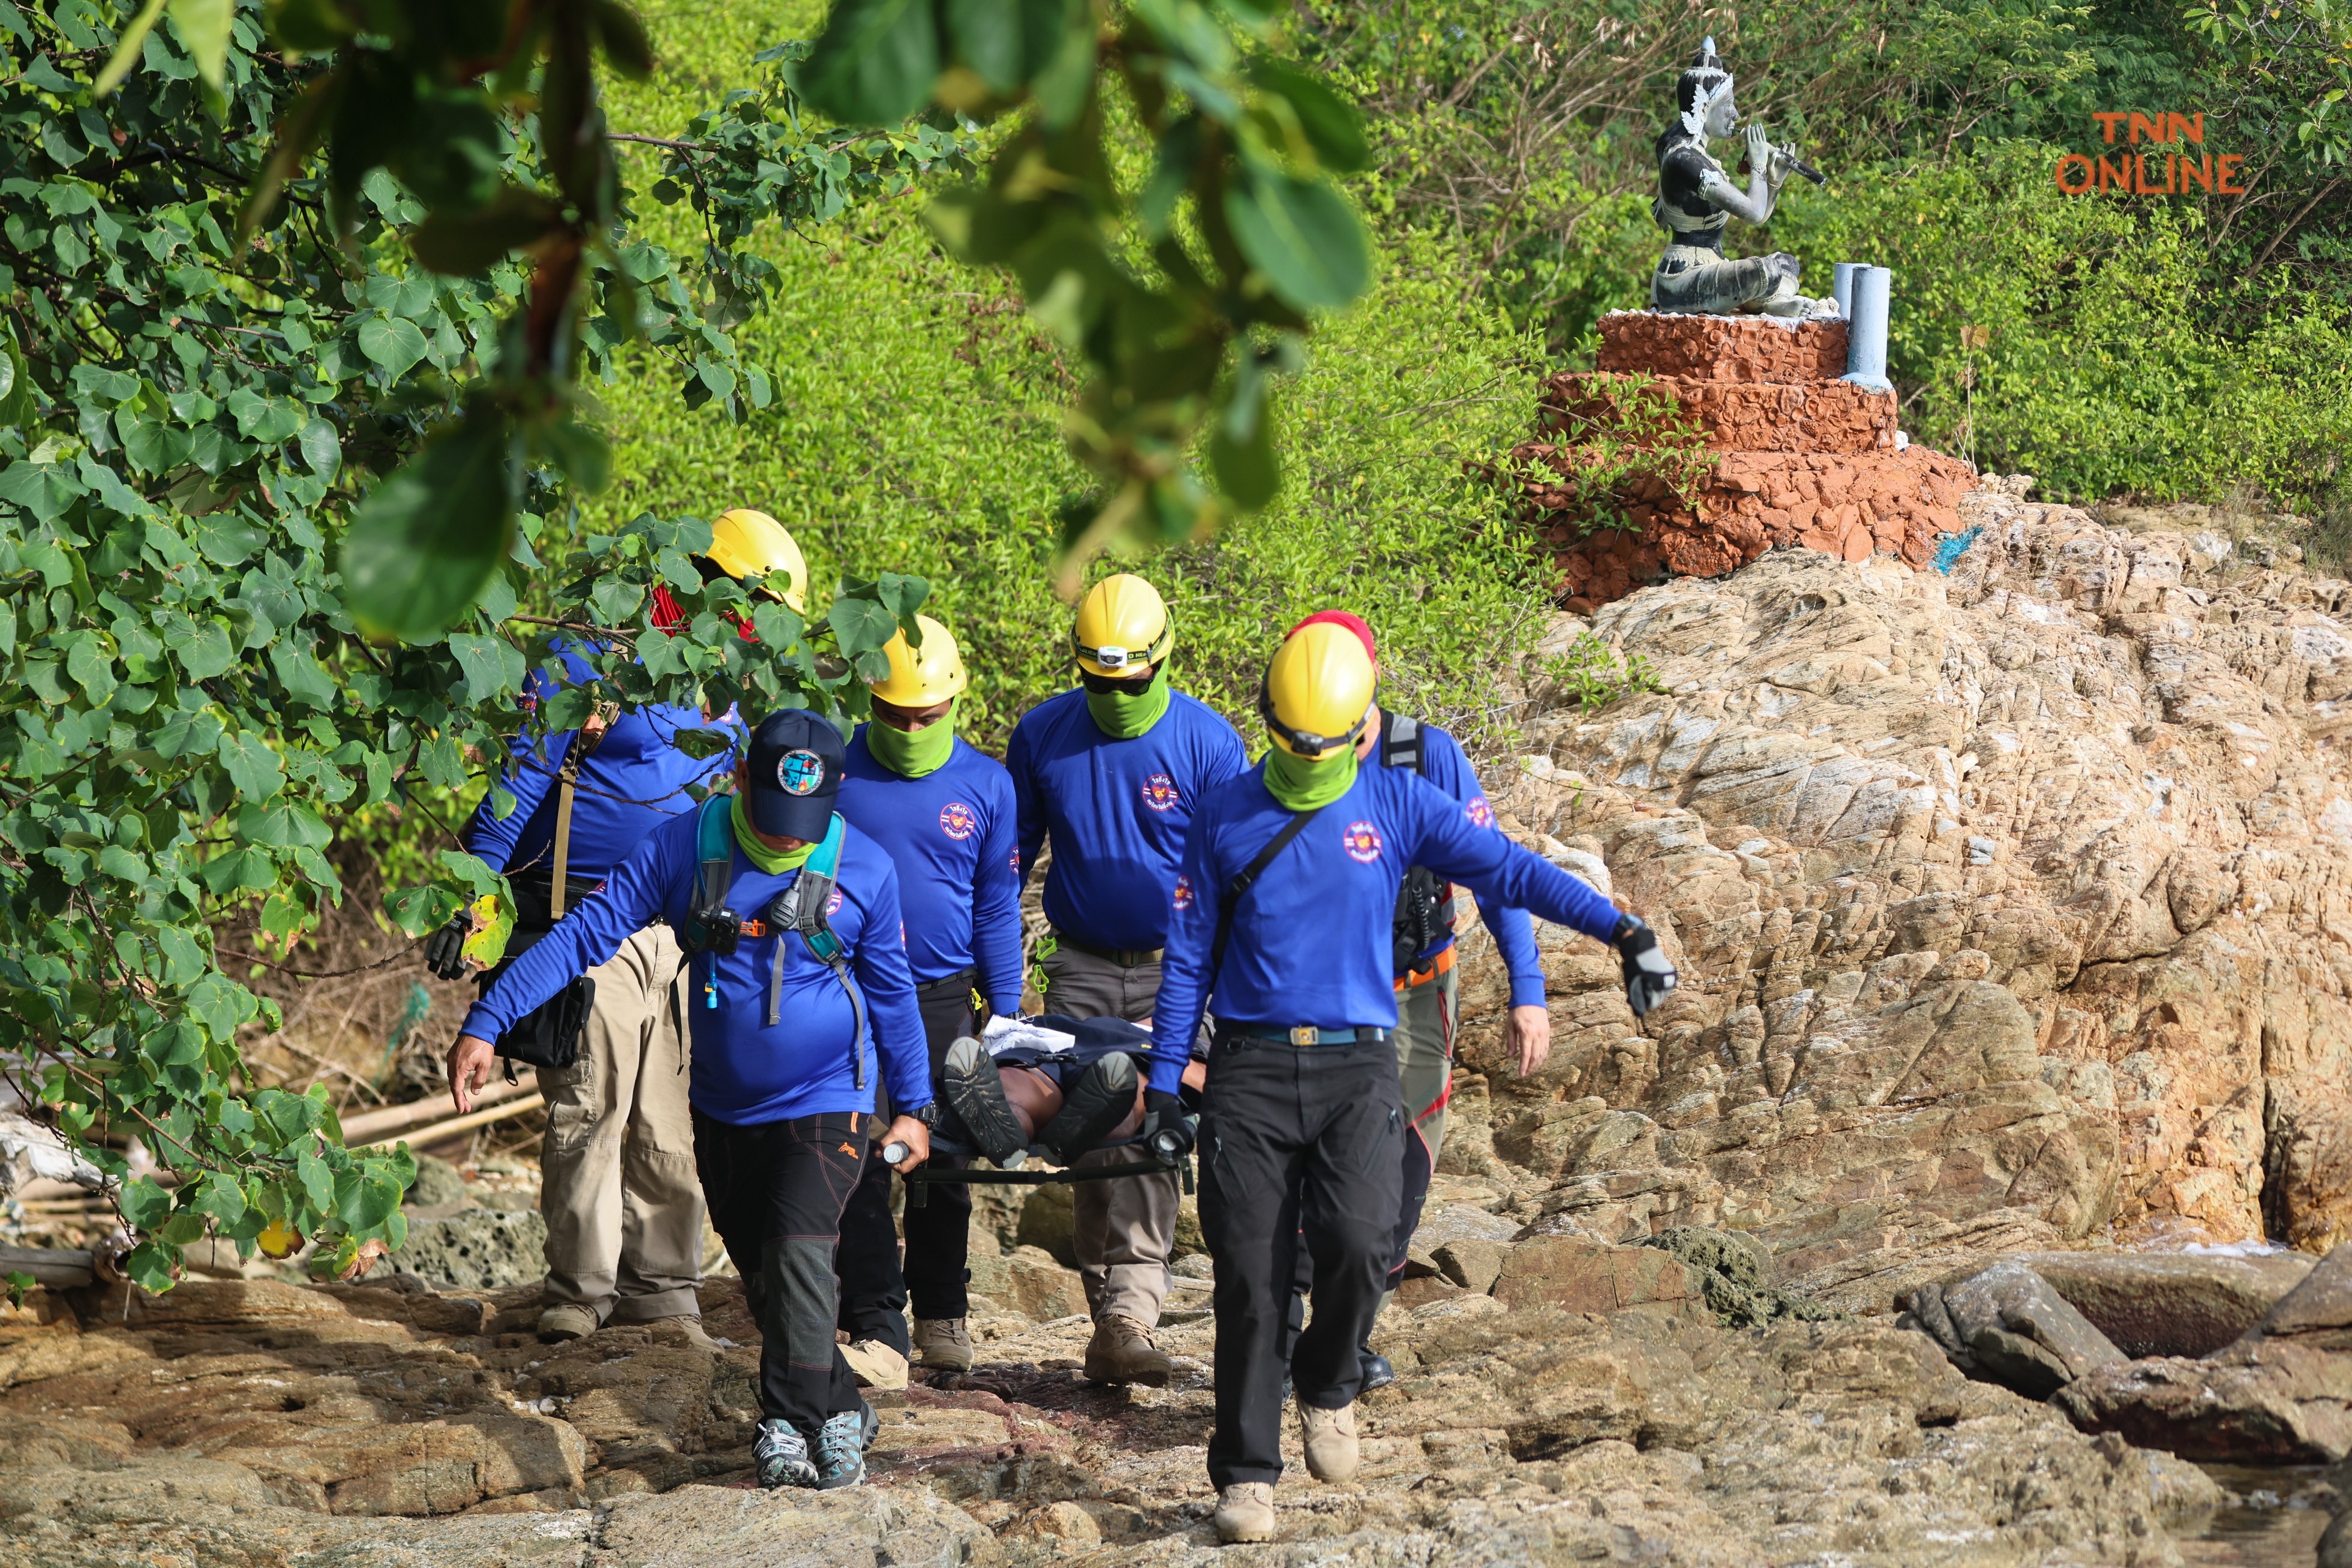 ประมวลภาพ ทร. ร่วมกับ หน่วยกู้ภัยใจถึงใจคนไทยไม่ทิ้งกัน นำโดยเล็กฝันเด่นจำลองสถานการณ์ช่วยเหลือผู้ประสบภัยทางทะเล